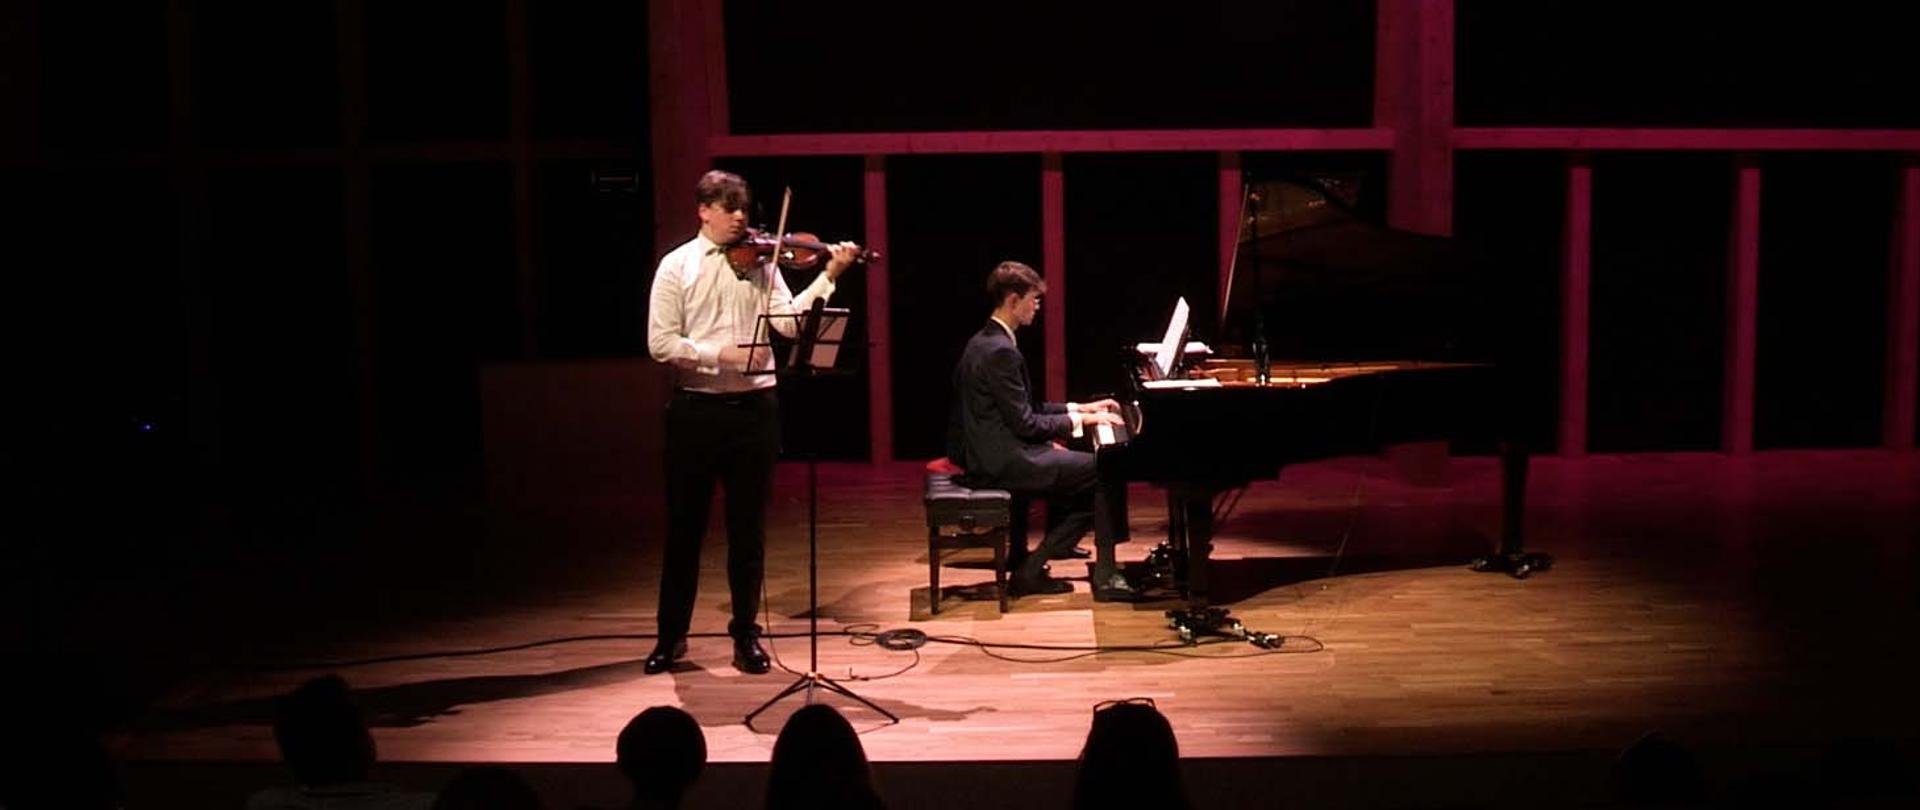 Dwaj mężczyźni występujący na scenie, jeden stoi z lewej strony i gra na skrzypcach, drugi z tyłu gra na fortepianie.